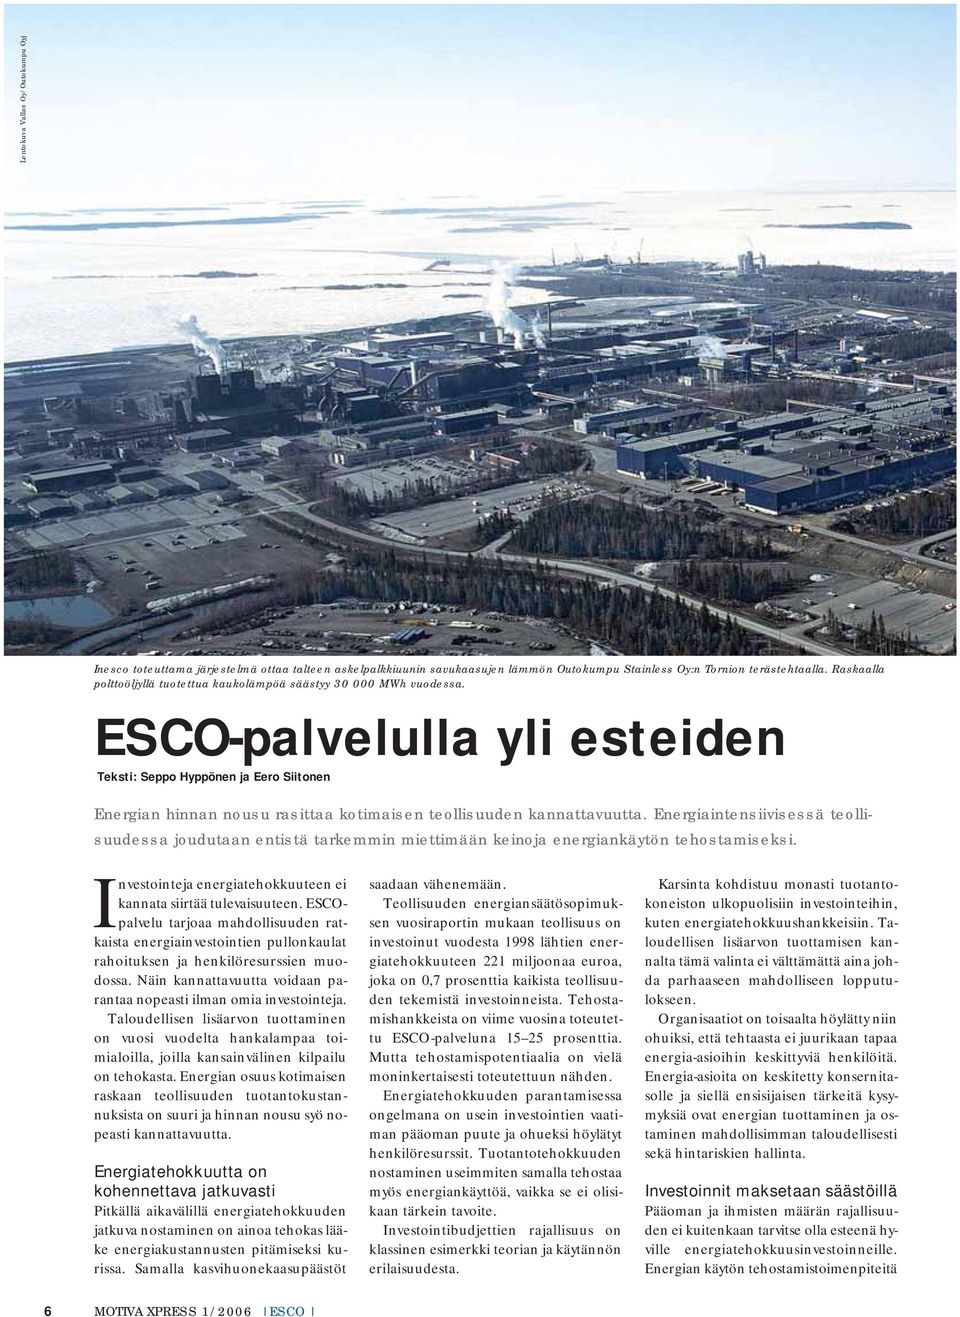 ESCO-palvelulla yli esteiden Teksti: Seppo Hyppönen ja Eero Siitonen Energian hinnan nousu rasittaa kotimaisen teollisuuden kannattavuutta.